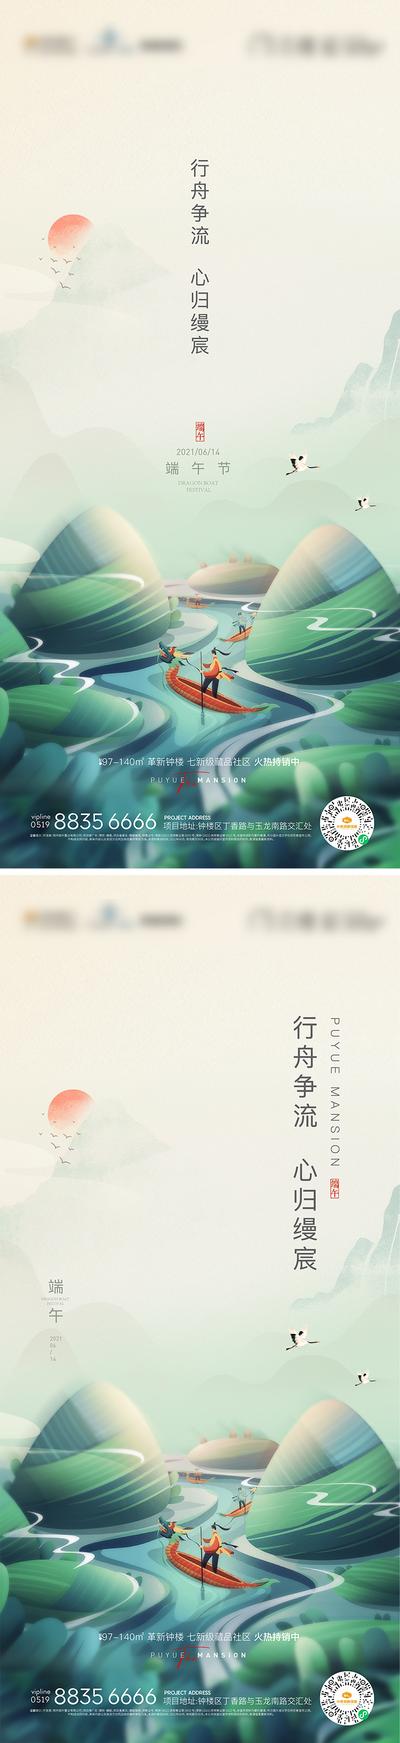 南门网 海报 房地产 端午节 中国传统节日 插画 粽子 赛龙舟